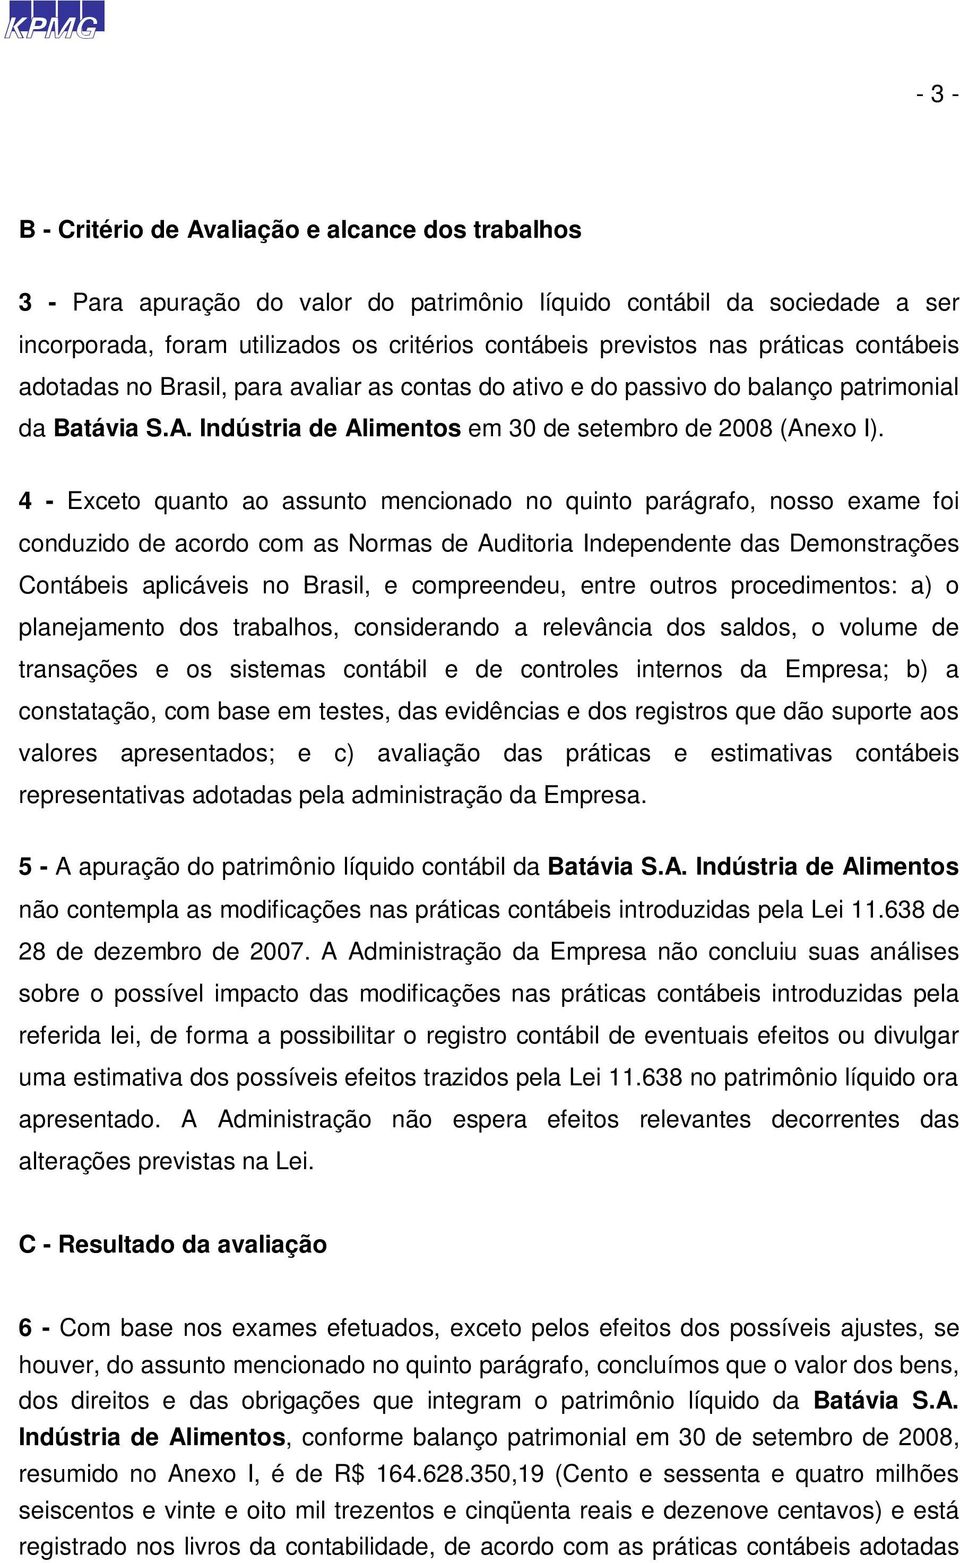 4 - Exceto quanto ao assunto mencionado no quinto parágrafo, nosso exame foi conduzido de acordo com as Normas de Auditoria Independente das Demonstrações Contábeis aplicáveis no Brasil, e